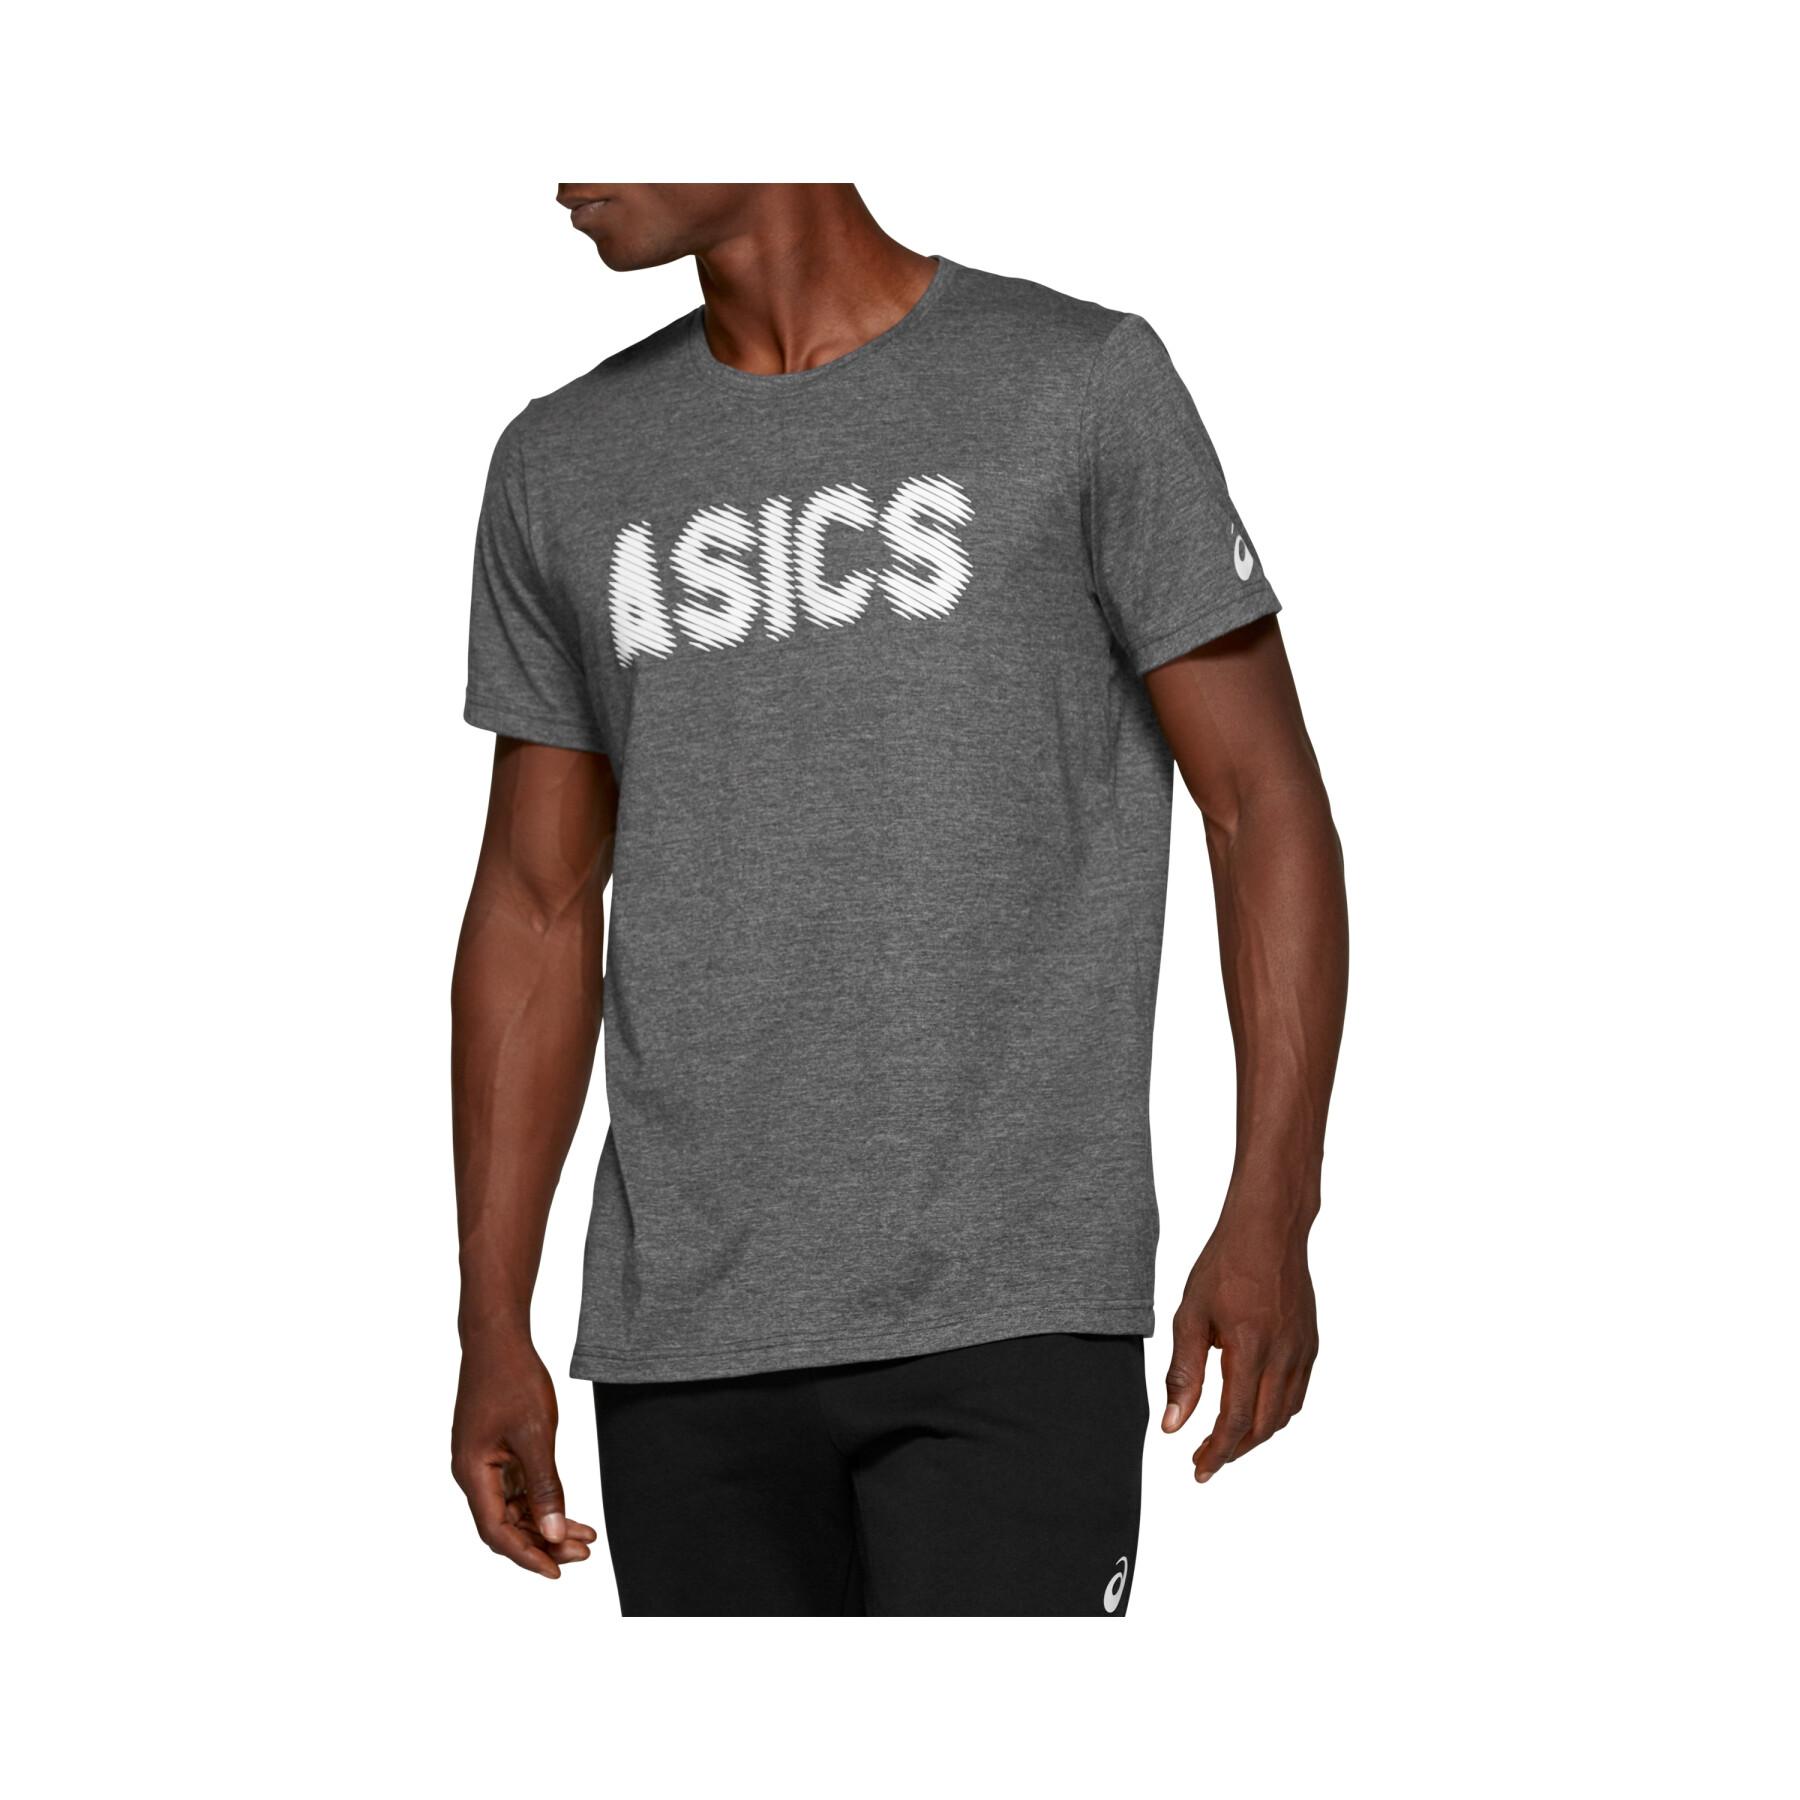 Koszulka Asics Gpx T 2